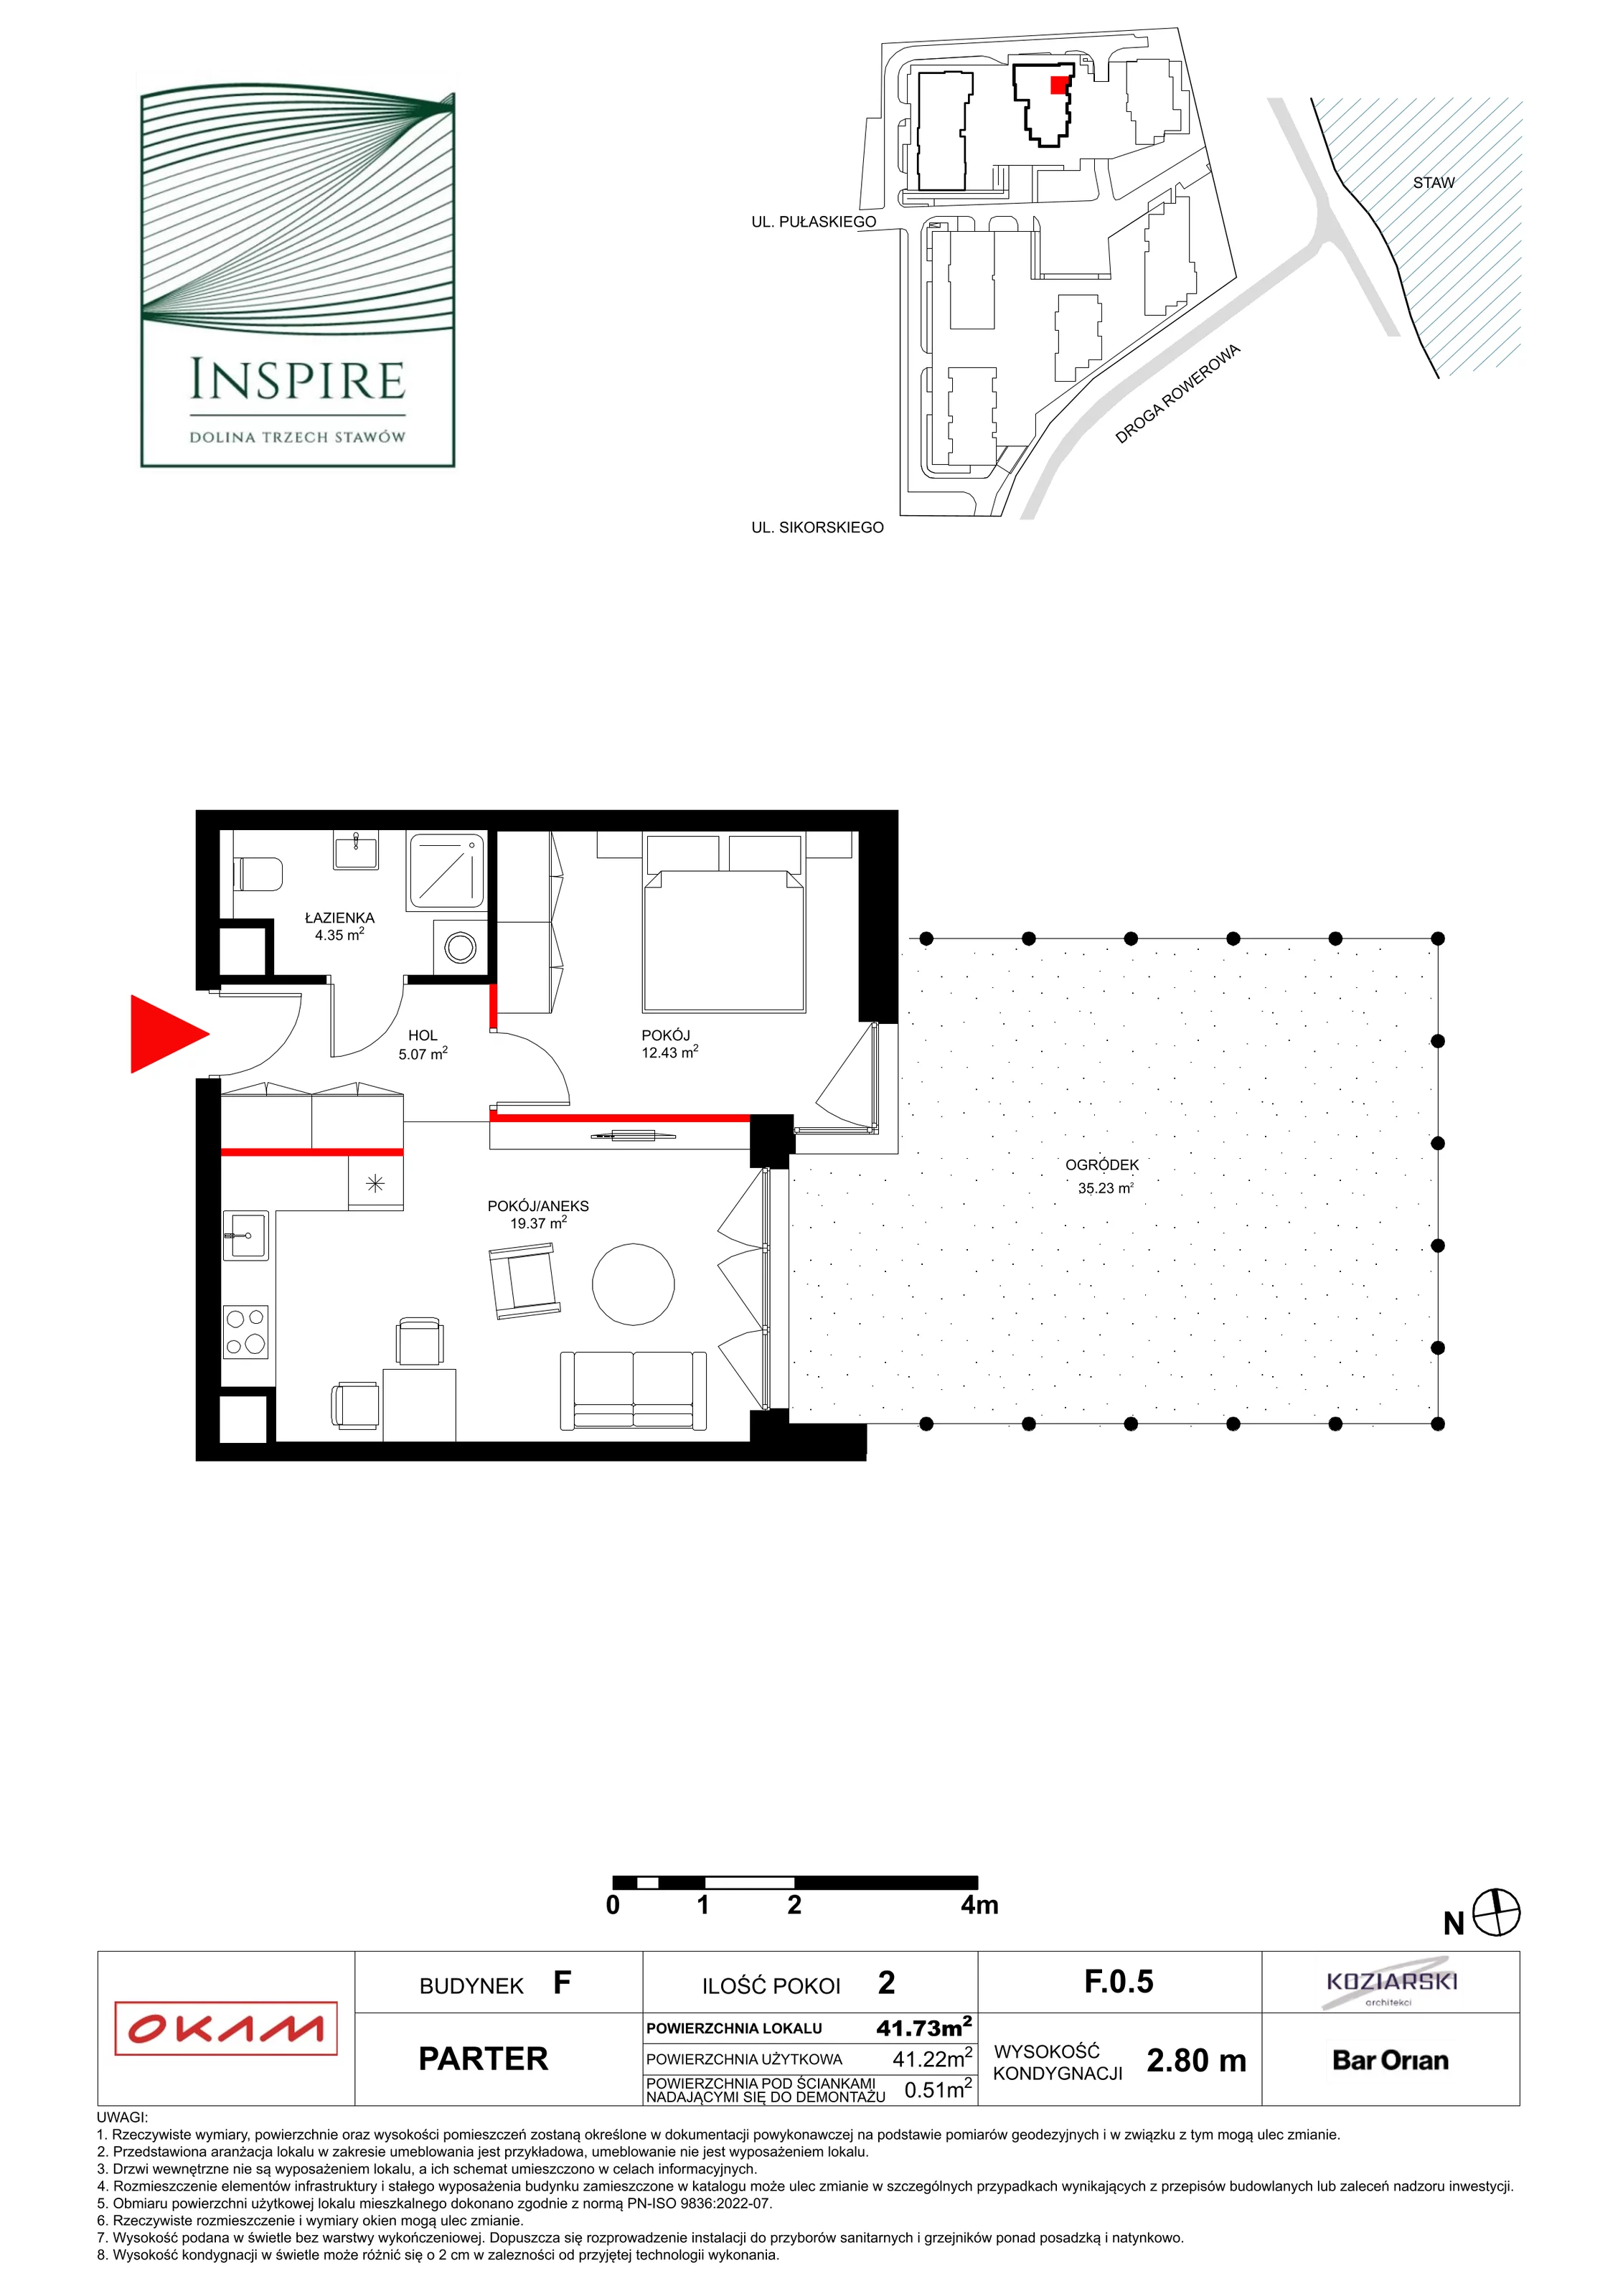 Apartament 41,23 m², parter, oferta nr F.0.5, Inspire, Katowice, Osiedle Paderewskiego-Muchowiec, Dolina Trzech Stawów, ul. gen. Sikorskiego 41